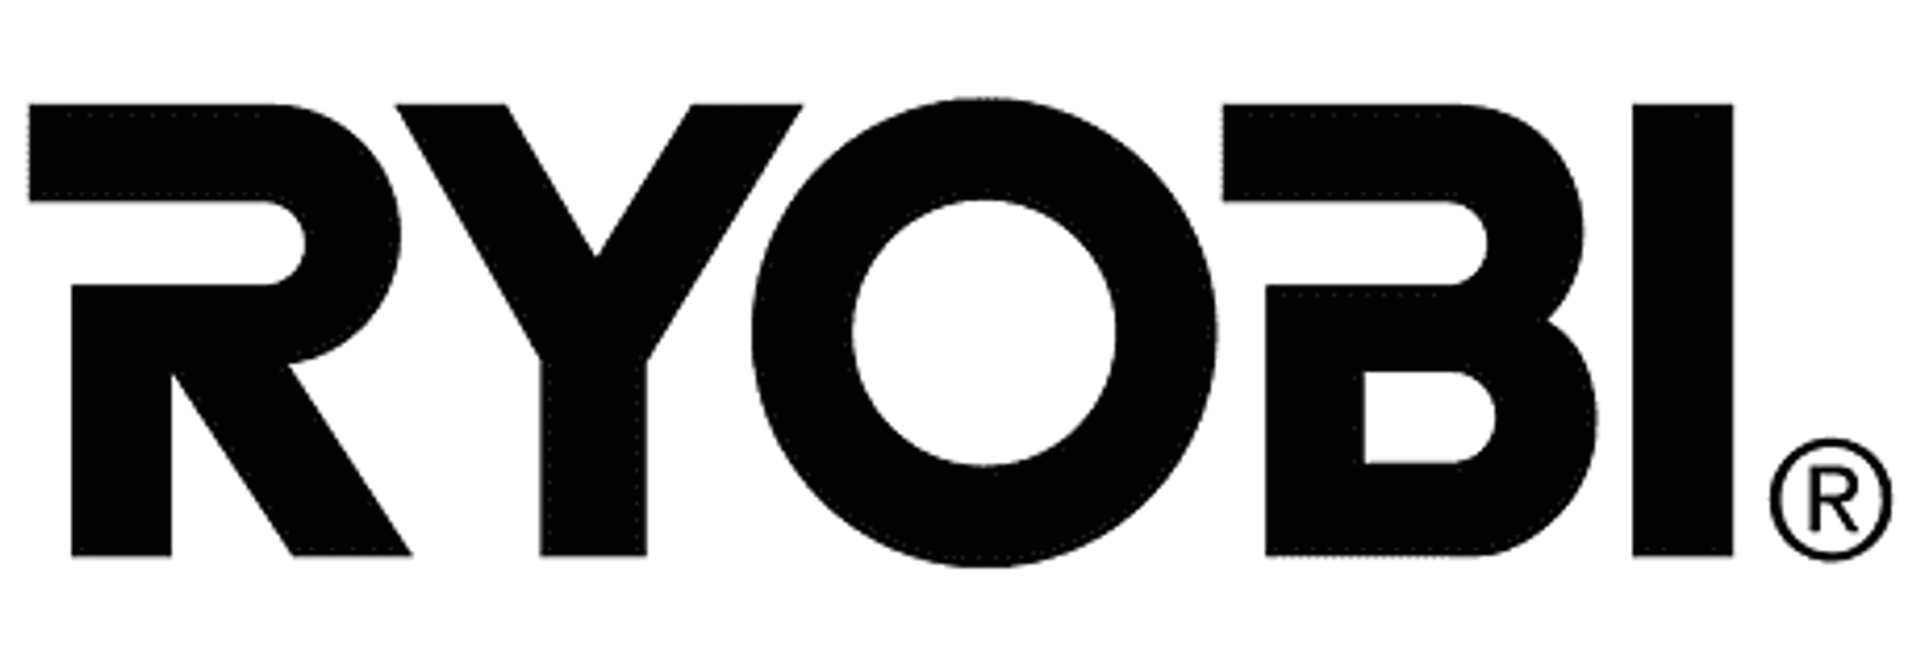 RYOBI logo